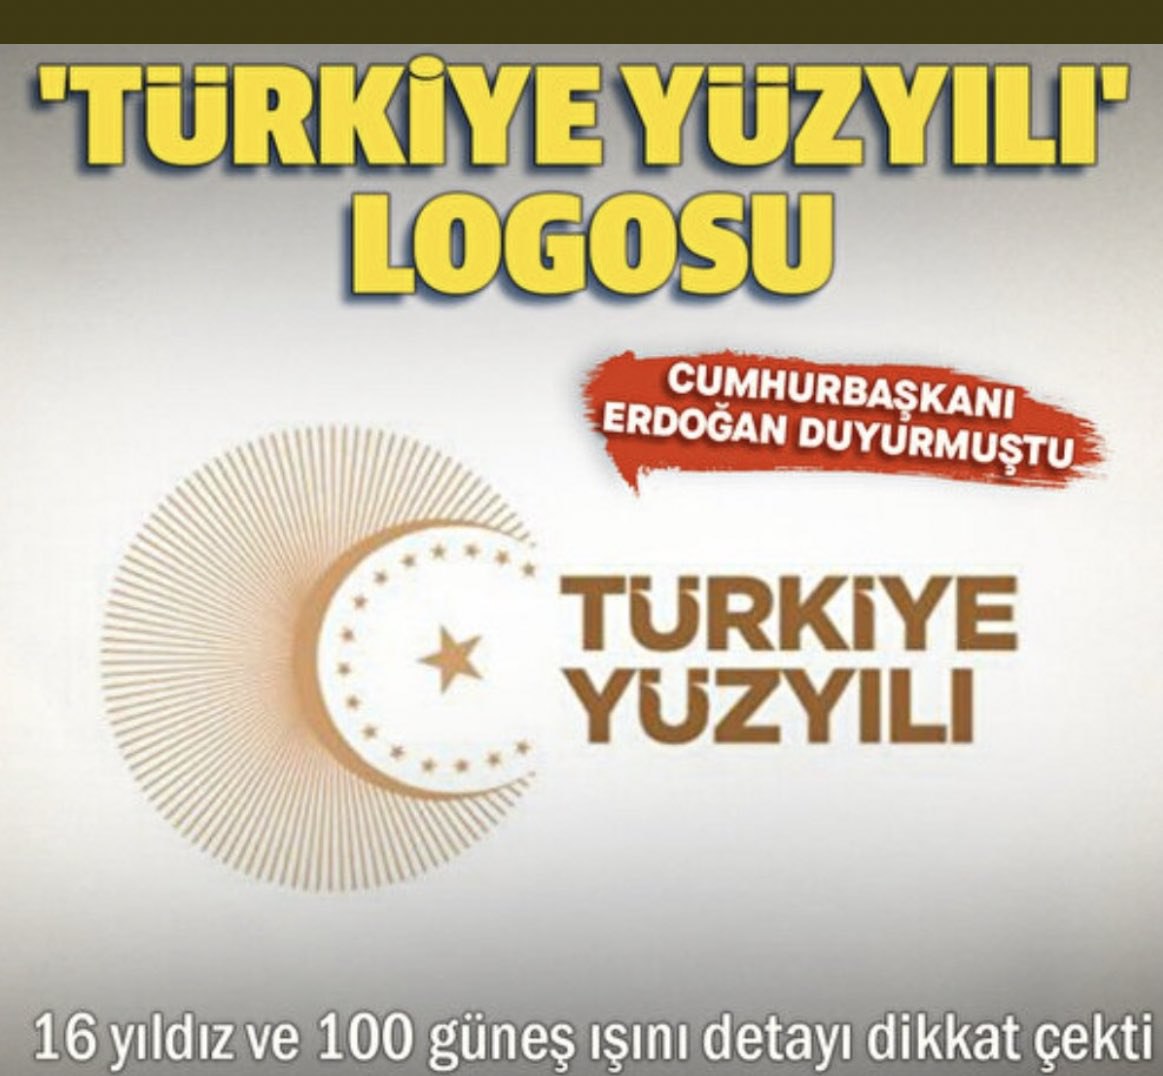 Logodaki 16 yıldız, kadim Türk tarihinin asli unsurlarını sembolleştirirken Türk bayrağının tamamlayıcısı tek yıldızın ise ortak mirası temsil ettiği belirtildi.